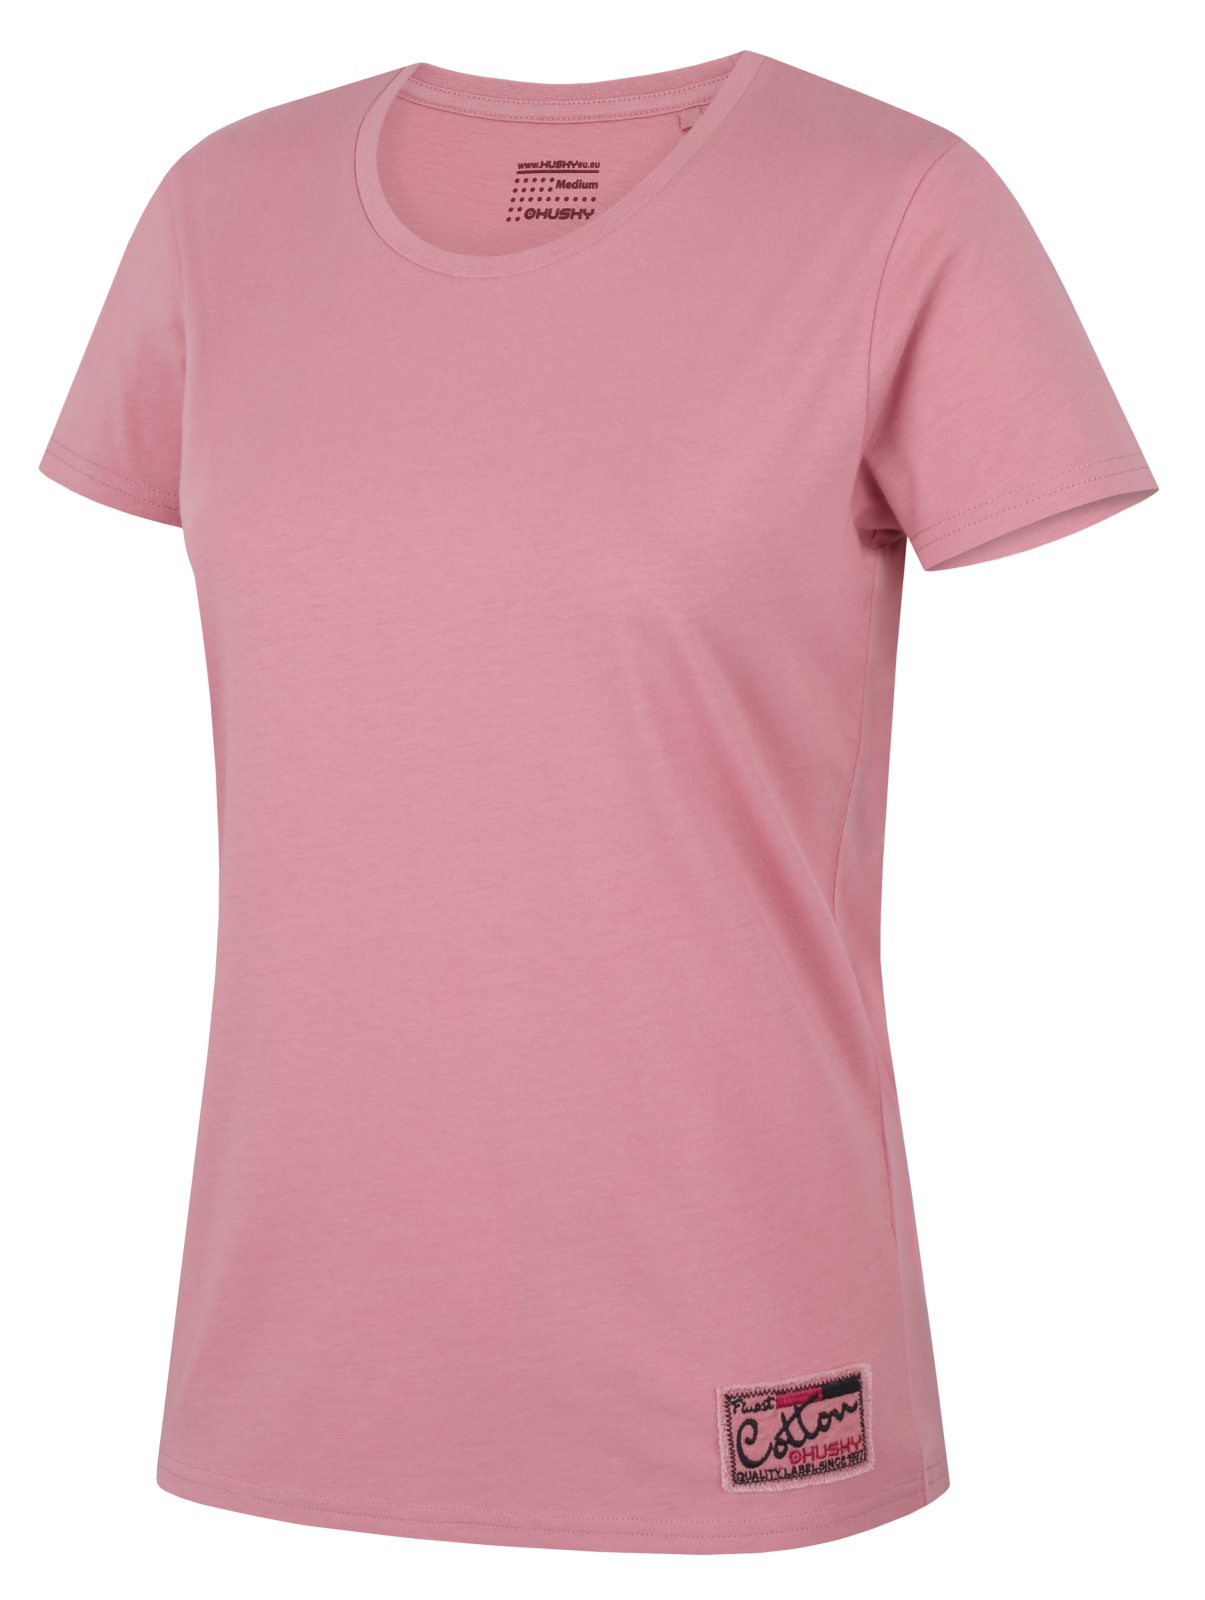 Husky Dámské bavlněné triko Tee Base L pink Velikost: S dámské tričko s krátkým rukávem